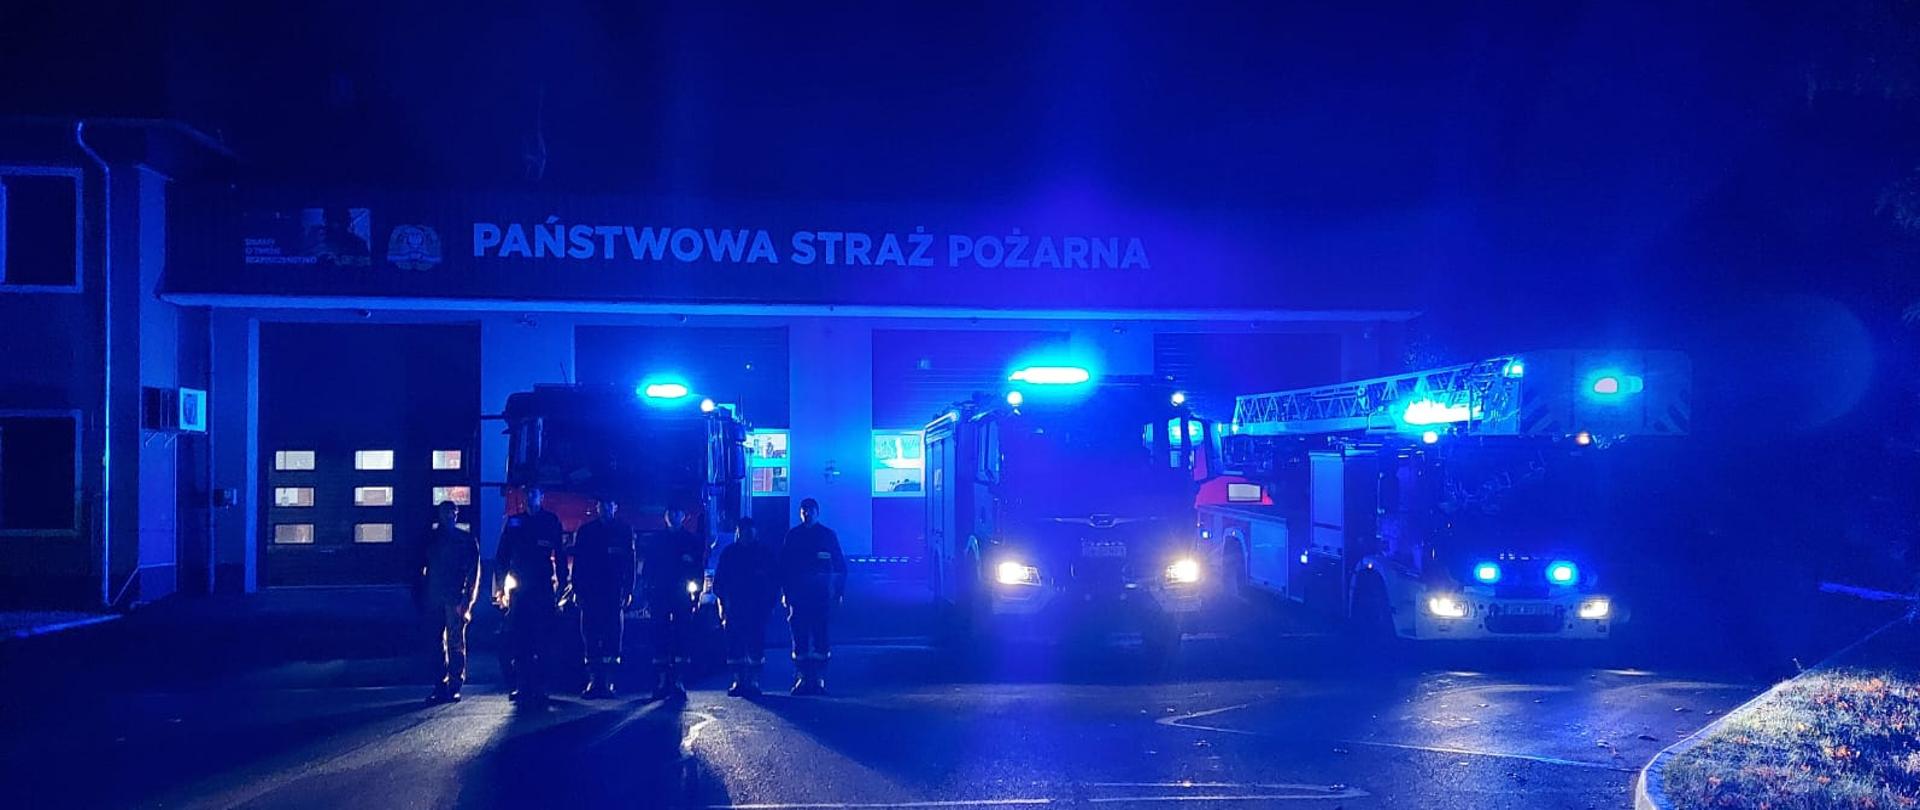 Zdjęcie przedstawia strażaków PSP na tle JRG Polkowice, którzy oddają hołd dla tragicznie zmarłego strażaka z Gdańska